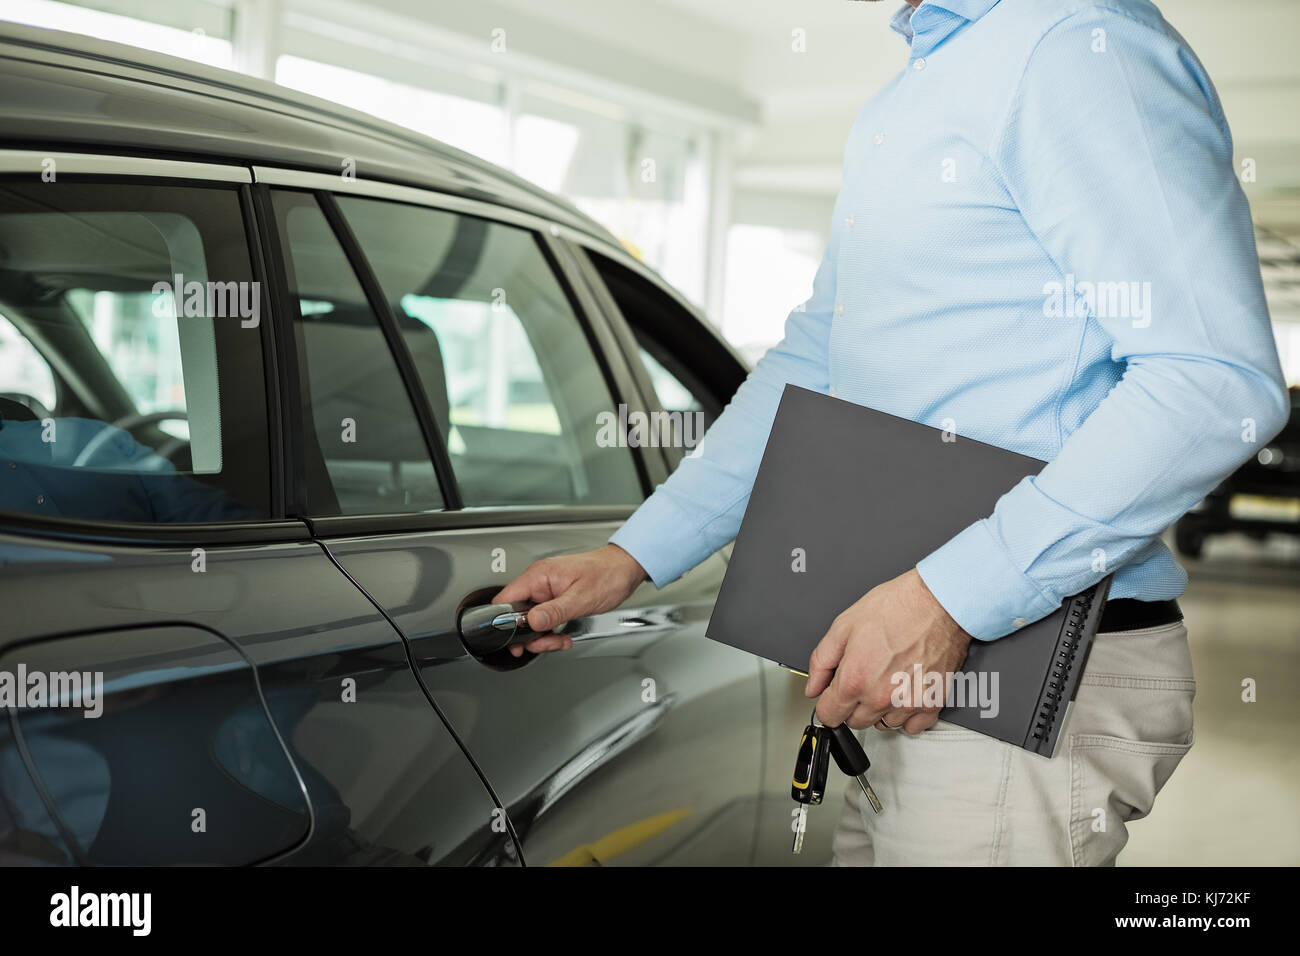 Nahaufnahme Foto des Menschen Öffnen einer Fahrzeugtür, halten ein Auto  Türgriff mit einer Hand und Ordner und Autoschlüssel in der anderen Hand  Stockfotografie - Alamy